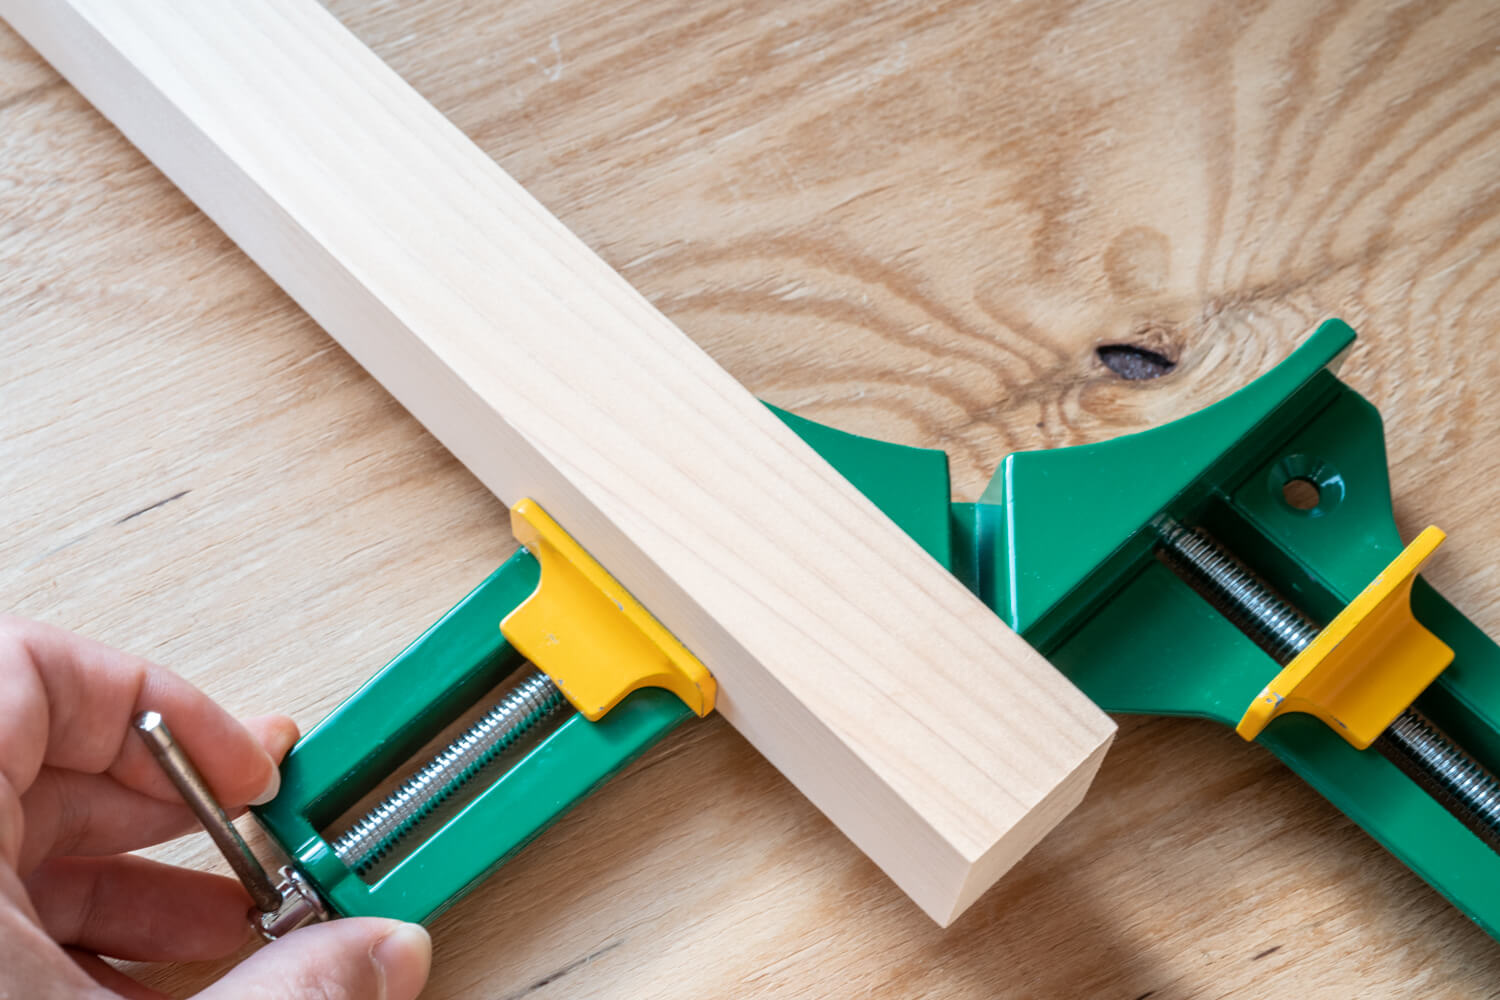 コーナークランプの使い方、木材の直角固定にDIYで便利なアイテム | 99% DIY -DIYブログ-